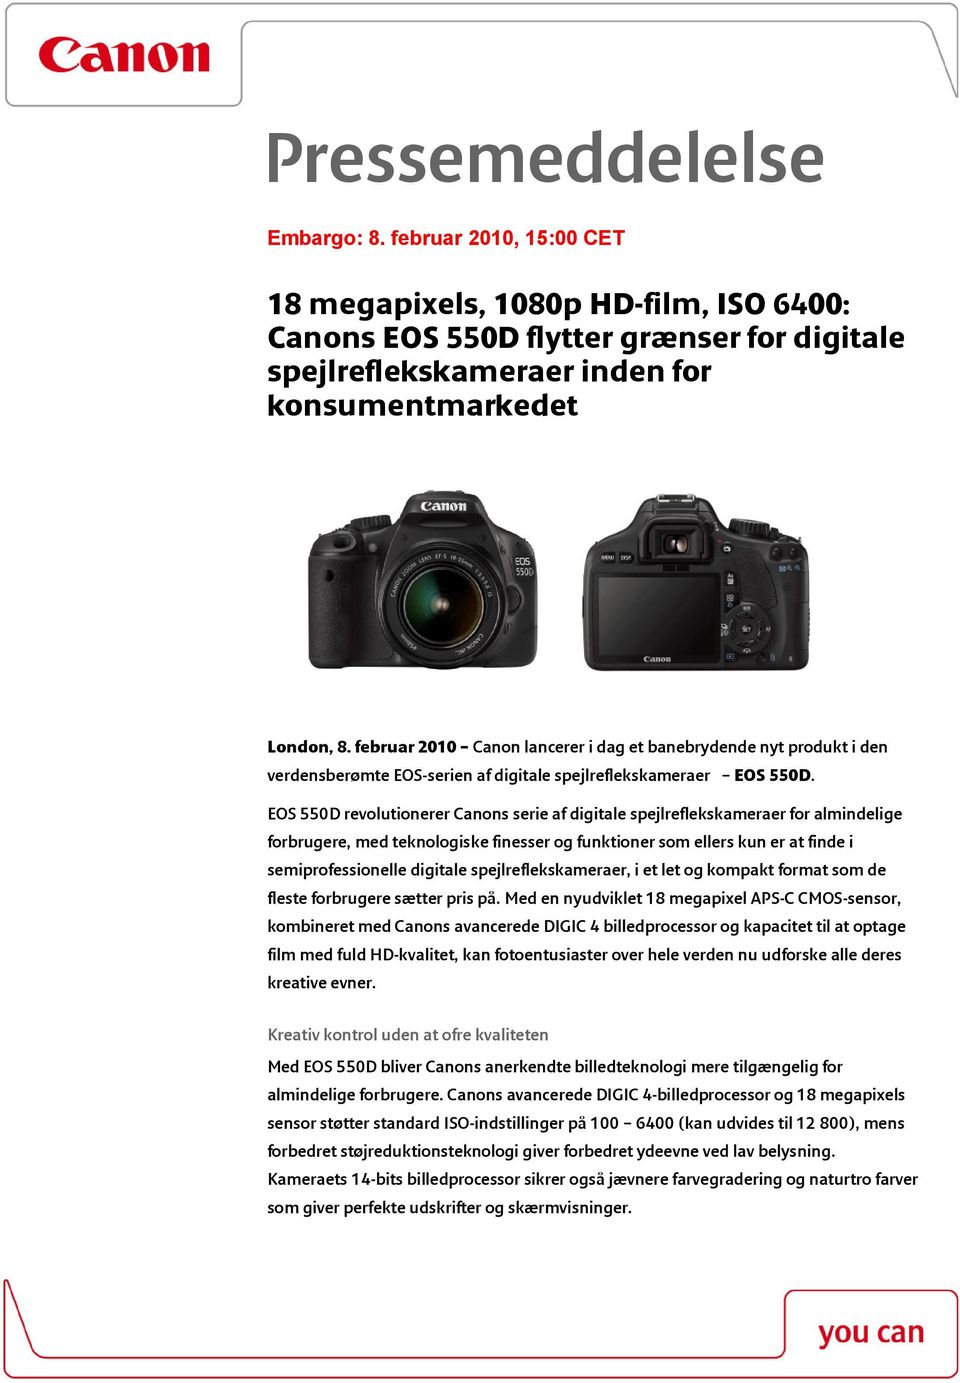 EOS 550D revolutionerer Canons serie af digitale spejlreflekskameraer for almindelige forbrugere, med teknologiske finesser og funktioner som ellers kun er at finde i semiprofessionelle digitale